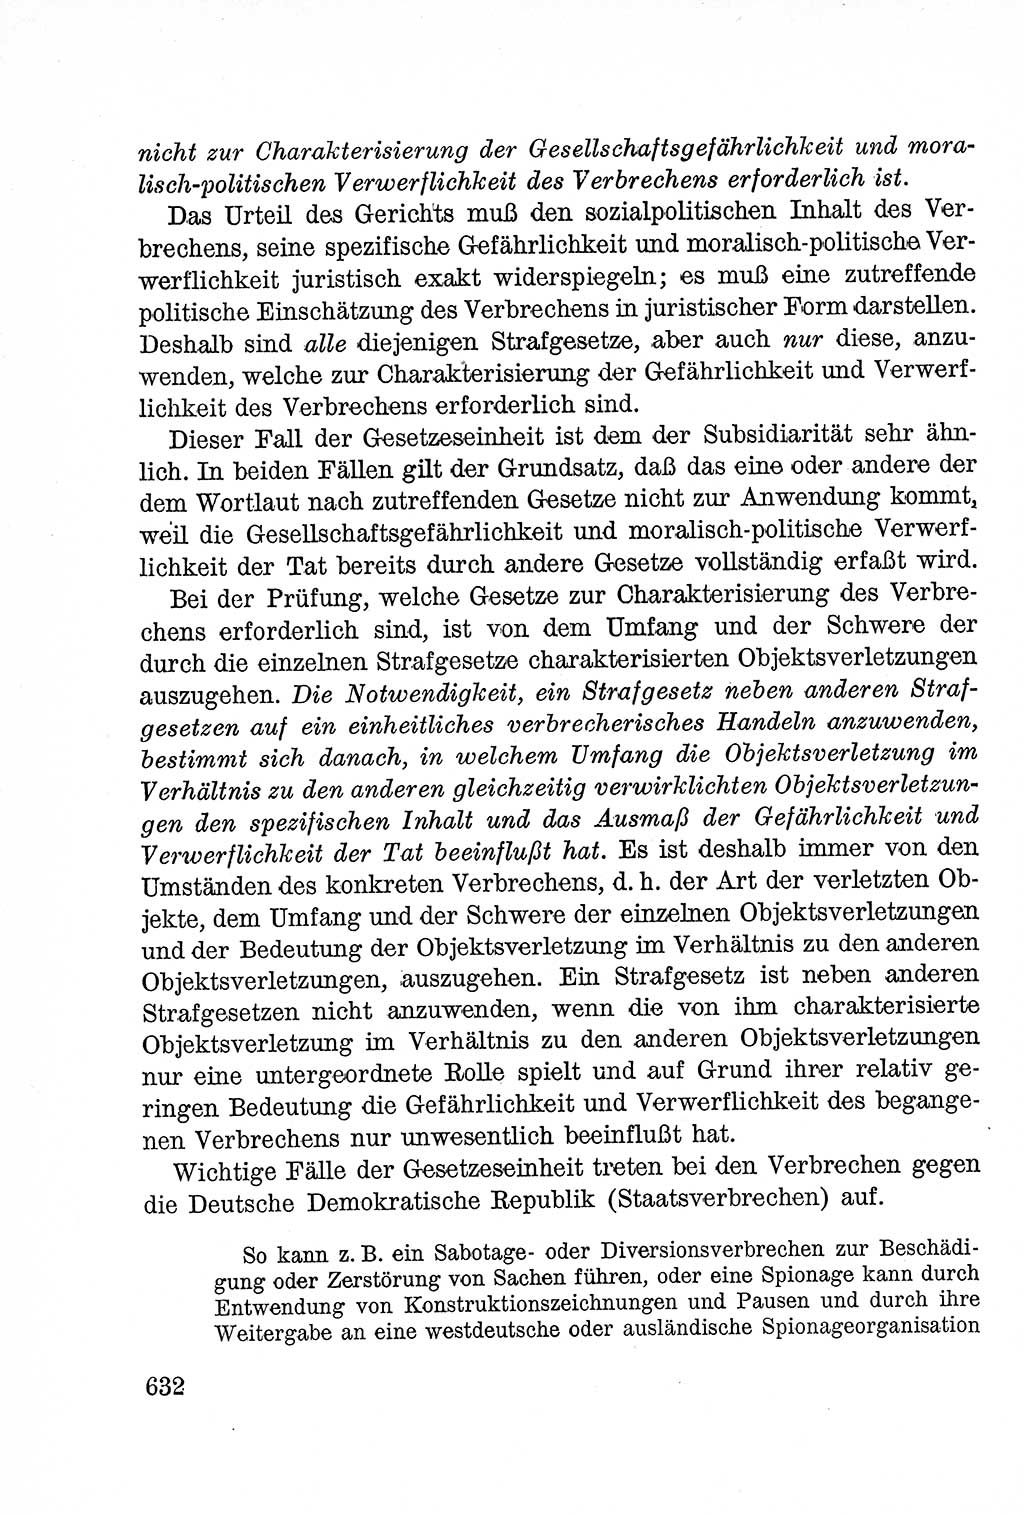 Lehrbuch des Strafrechts der Deutschen Demokratischen Republik (DDR), Allgemeiner Teil 1957, Seite 632 (Lb. Strafr. DDR AT 1957, S. 632)